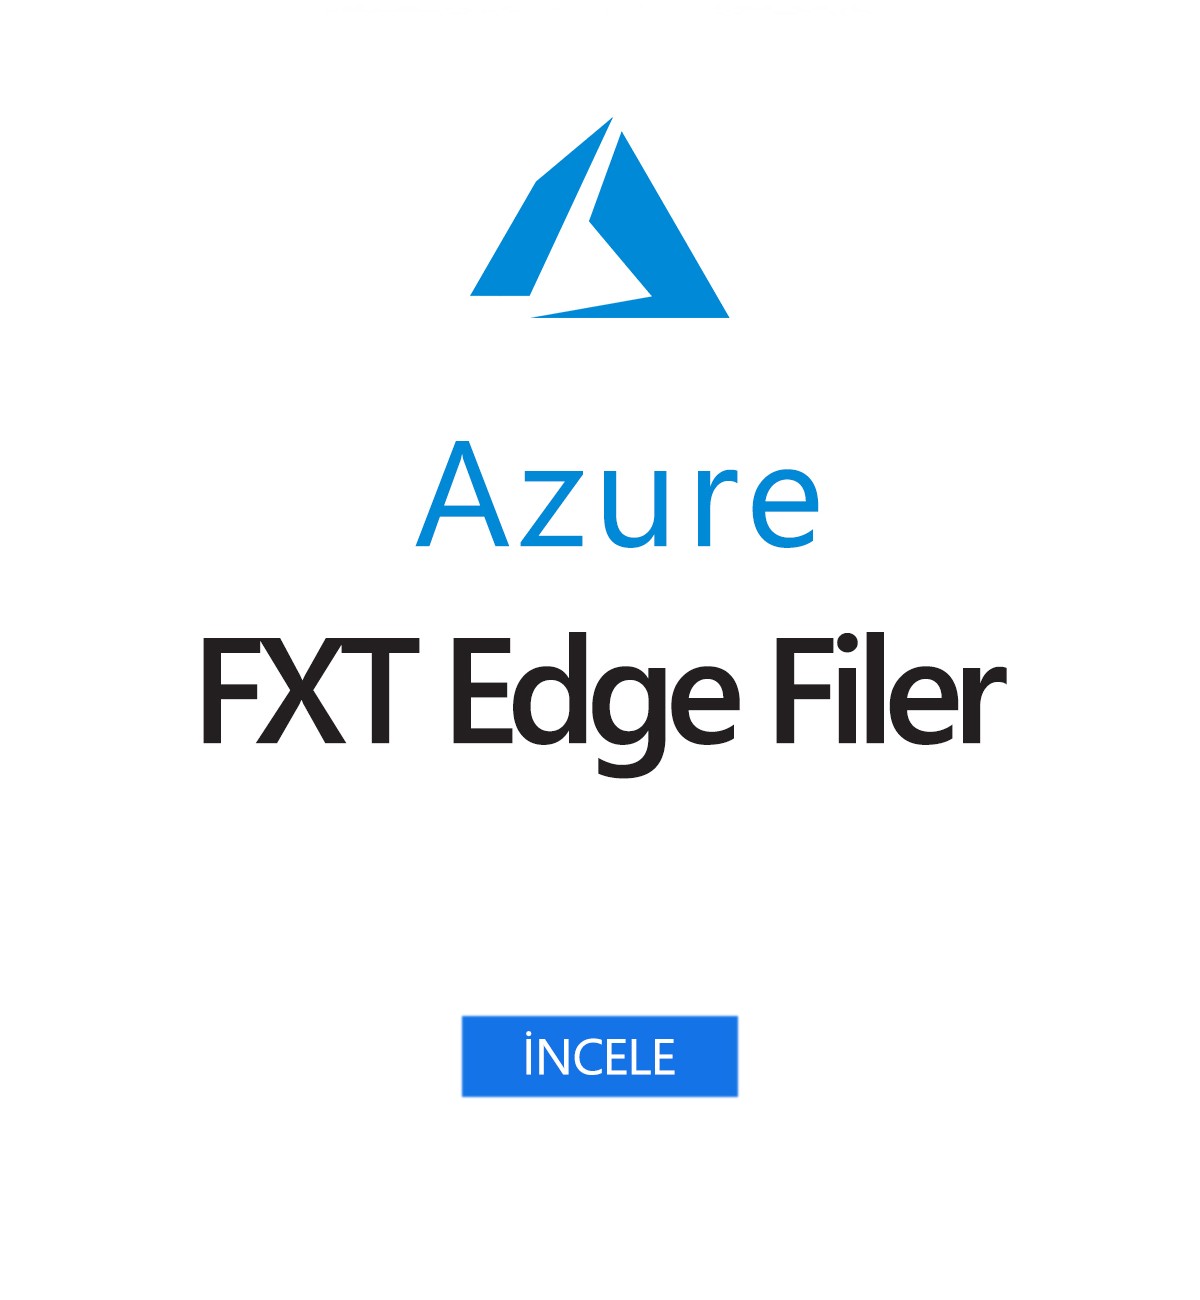 Azure FXT Edge Filer